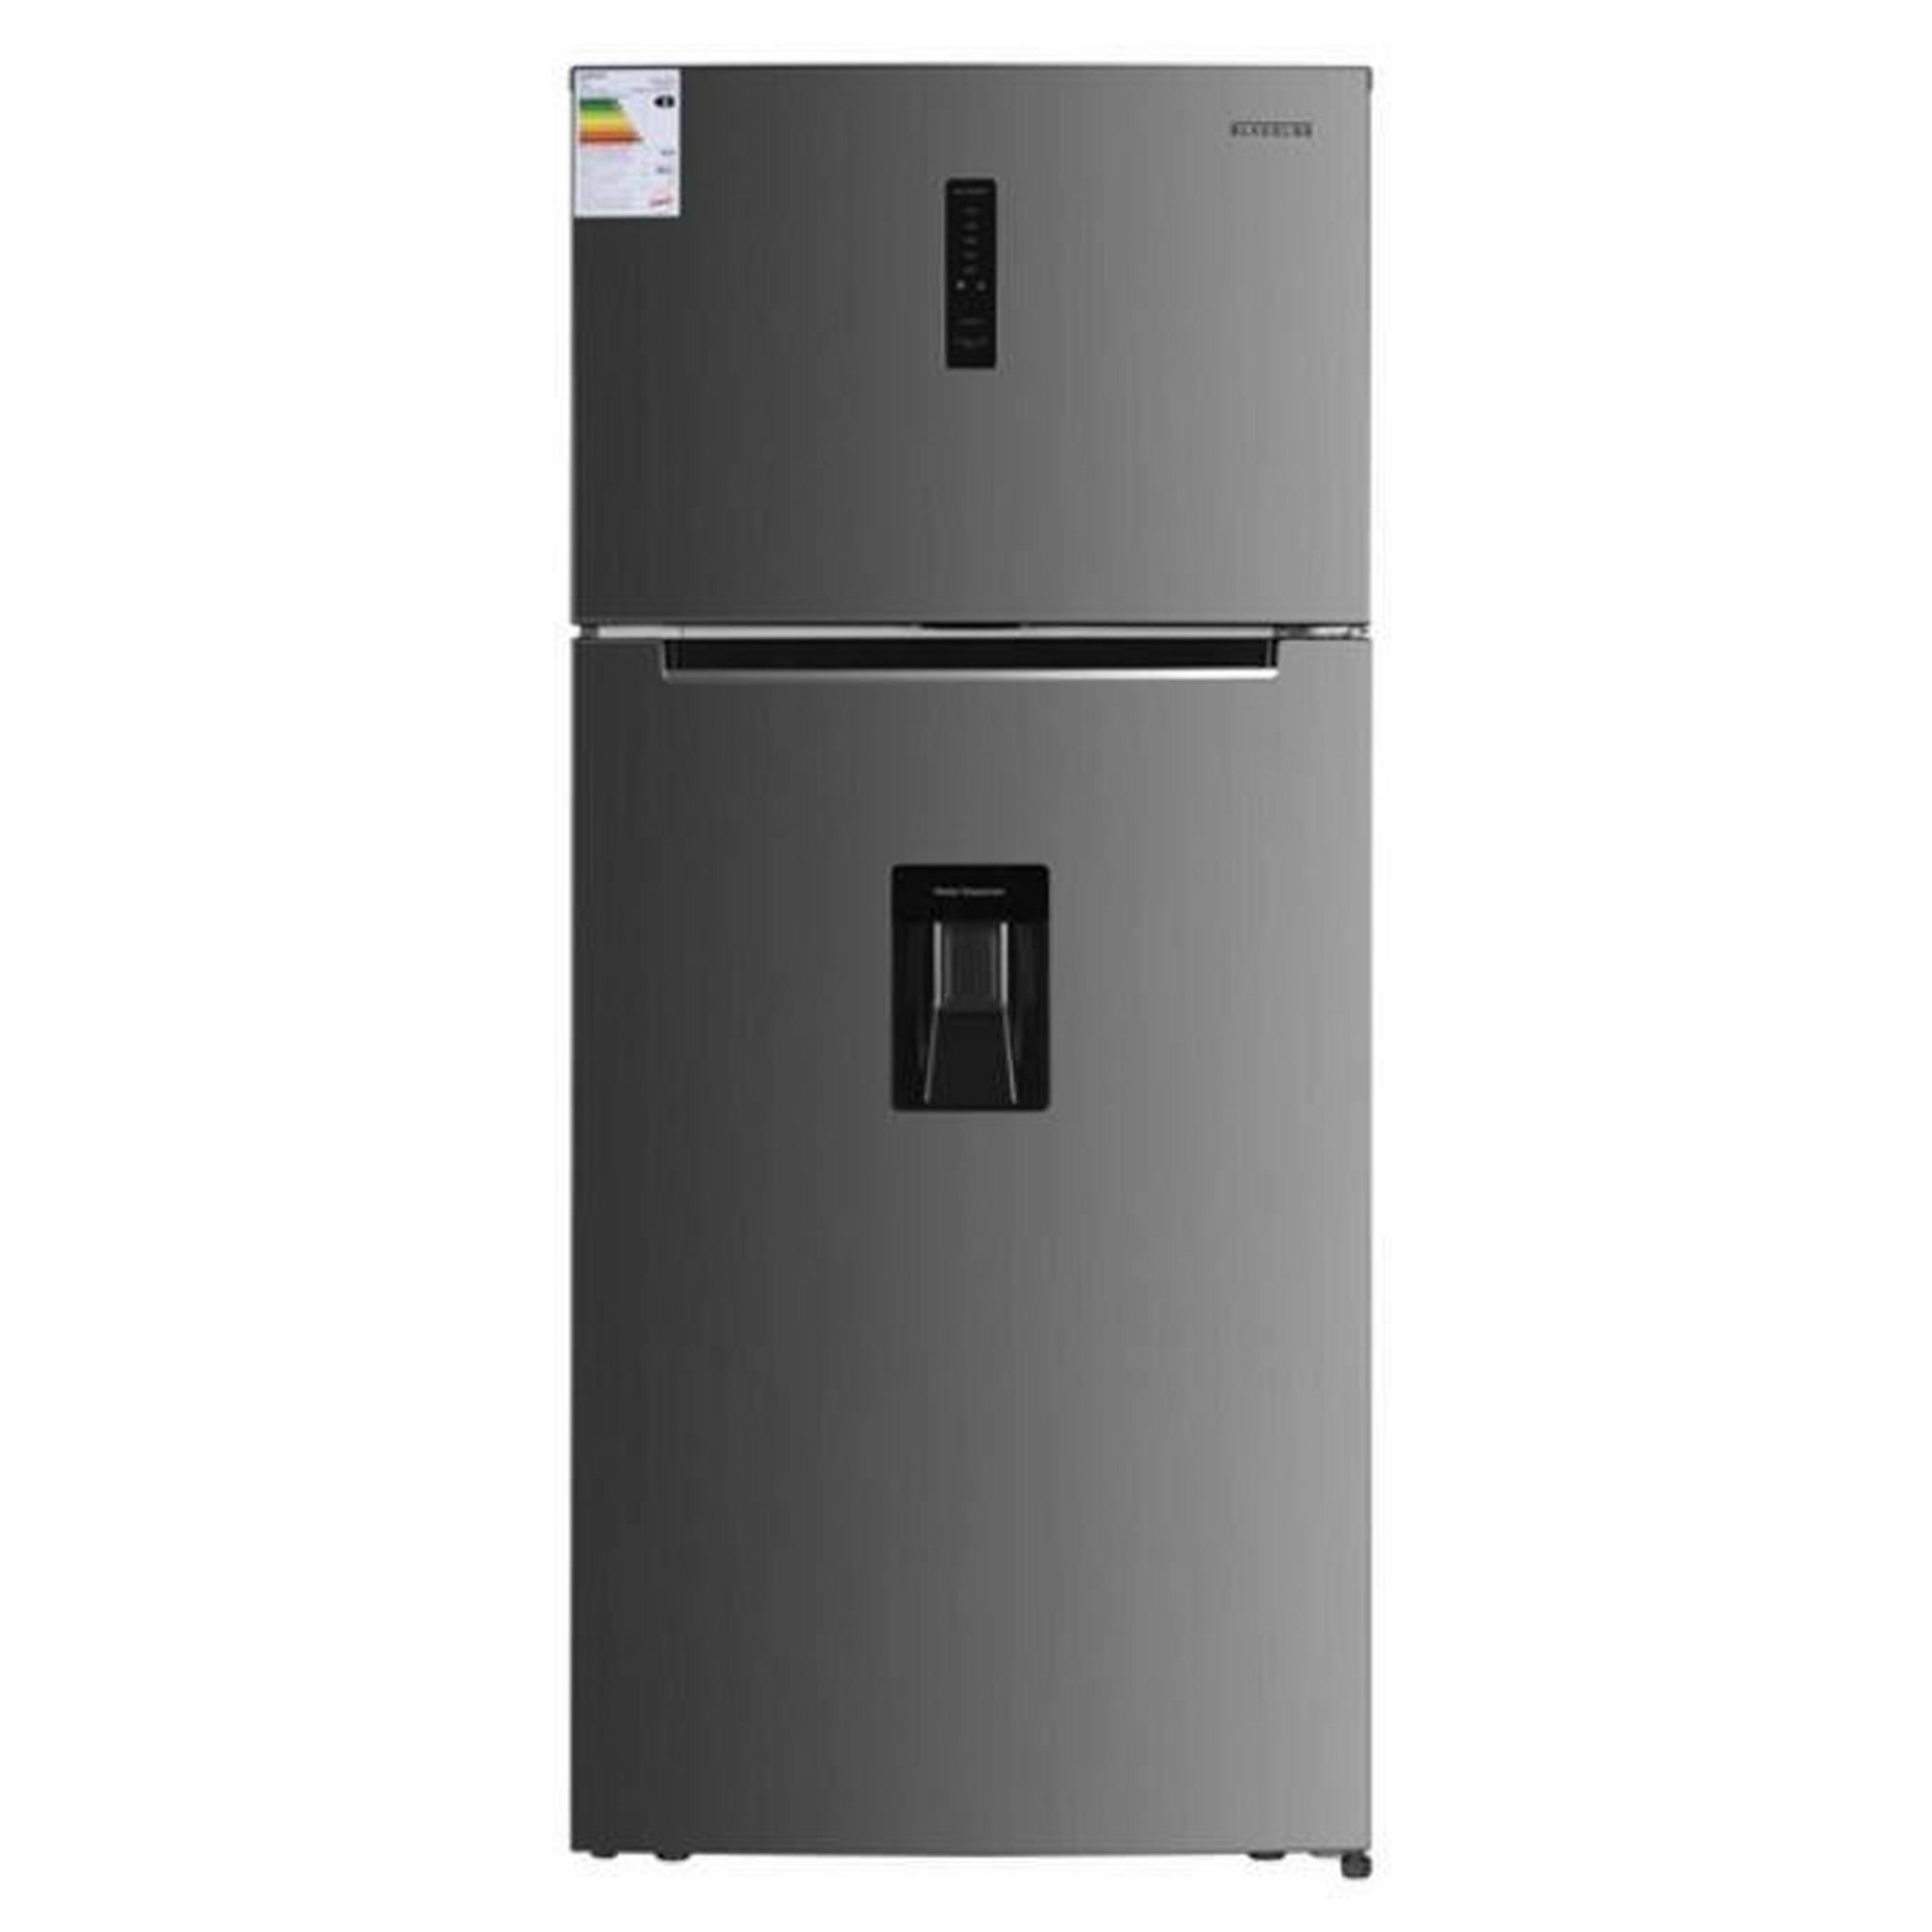 Daewoo Top Mount Refrigerator, 21 Cft, 600Ltr, DRTG-600-NFSC82 – Silver